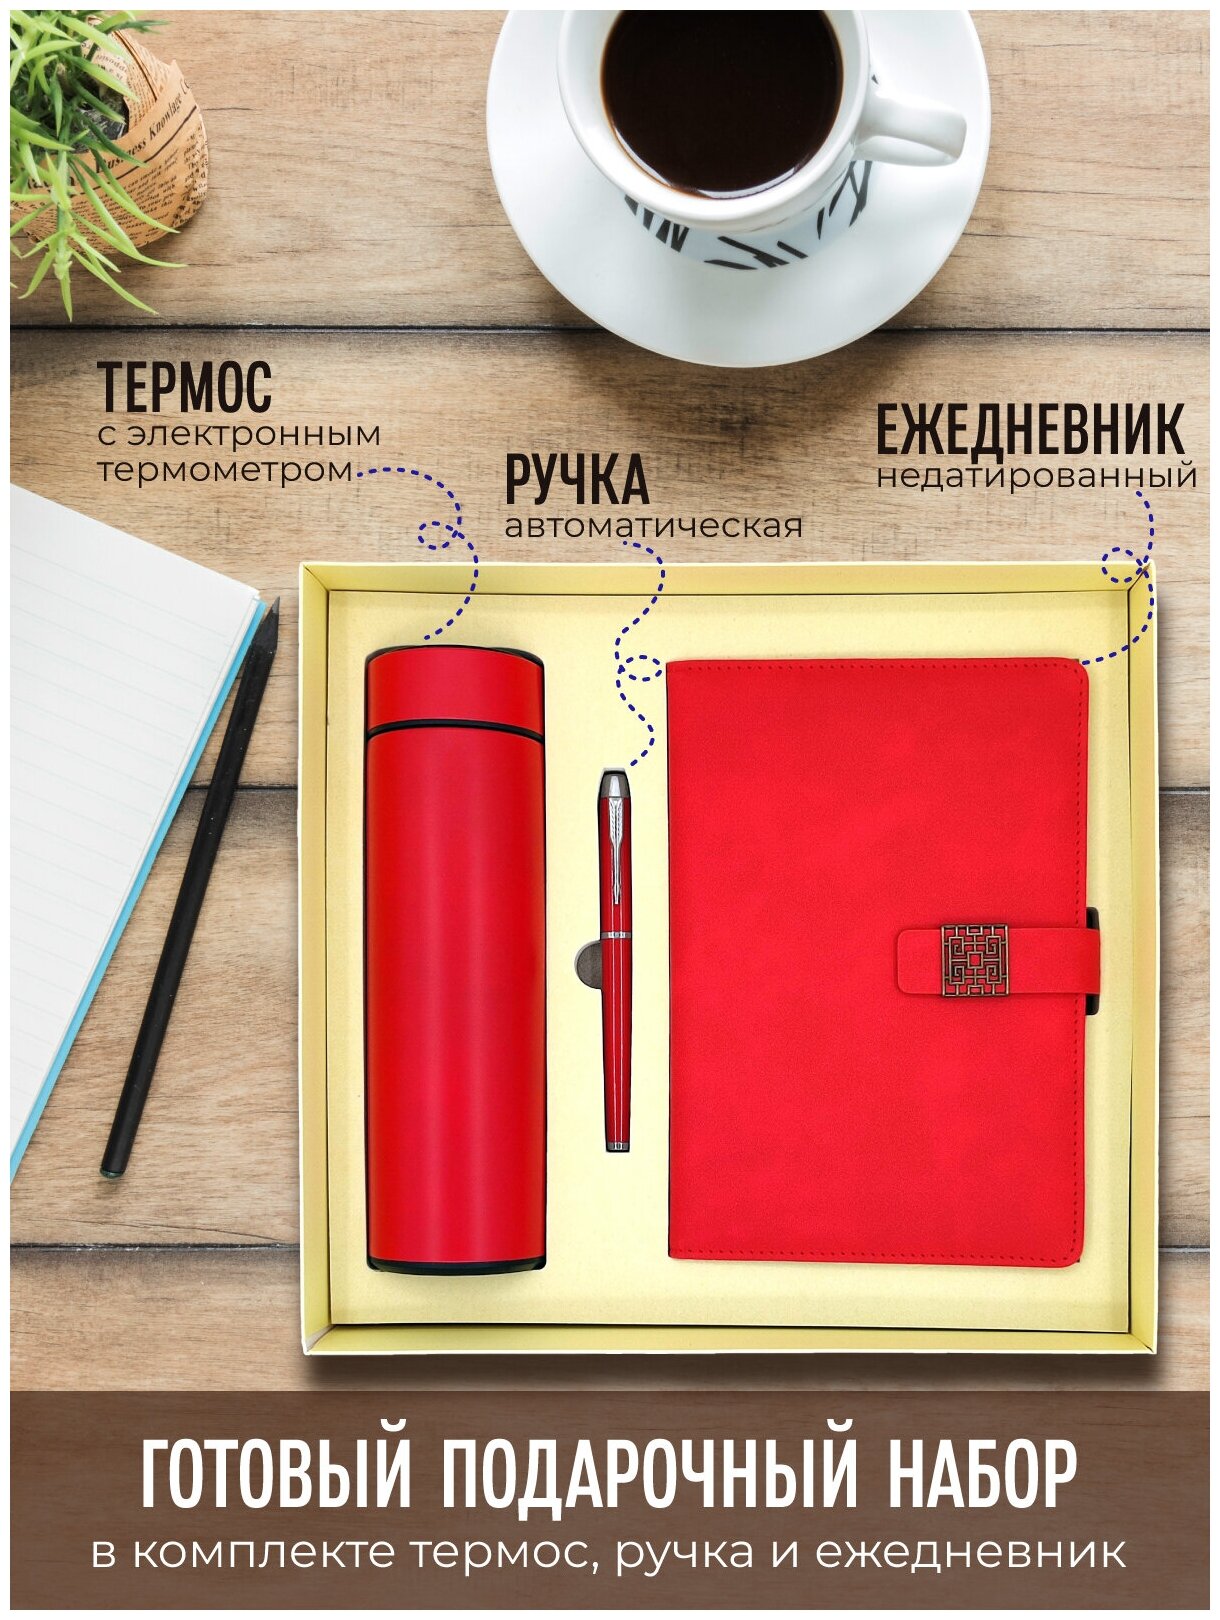 Подарочный набор термос с электронным термометром + ежедневник + ручка / цвет красный